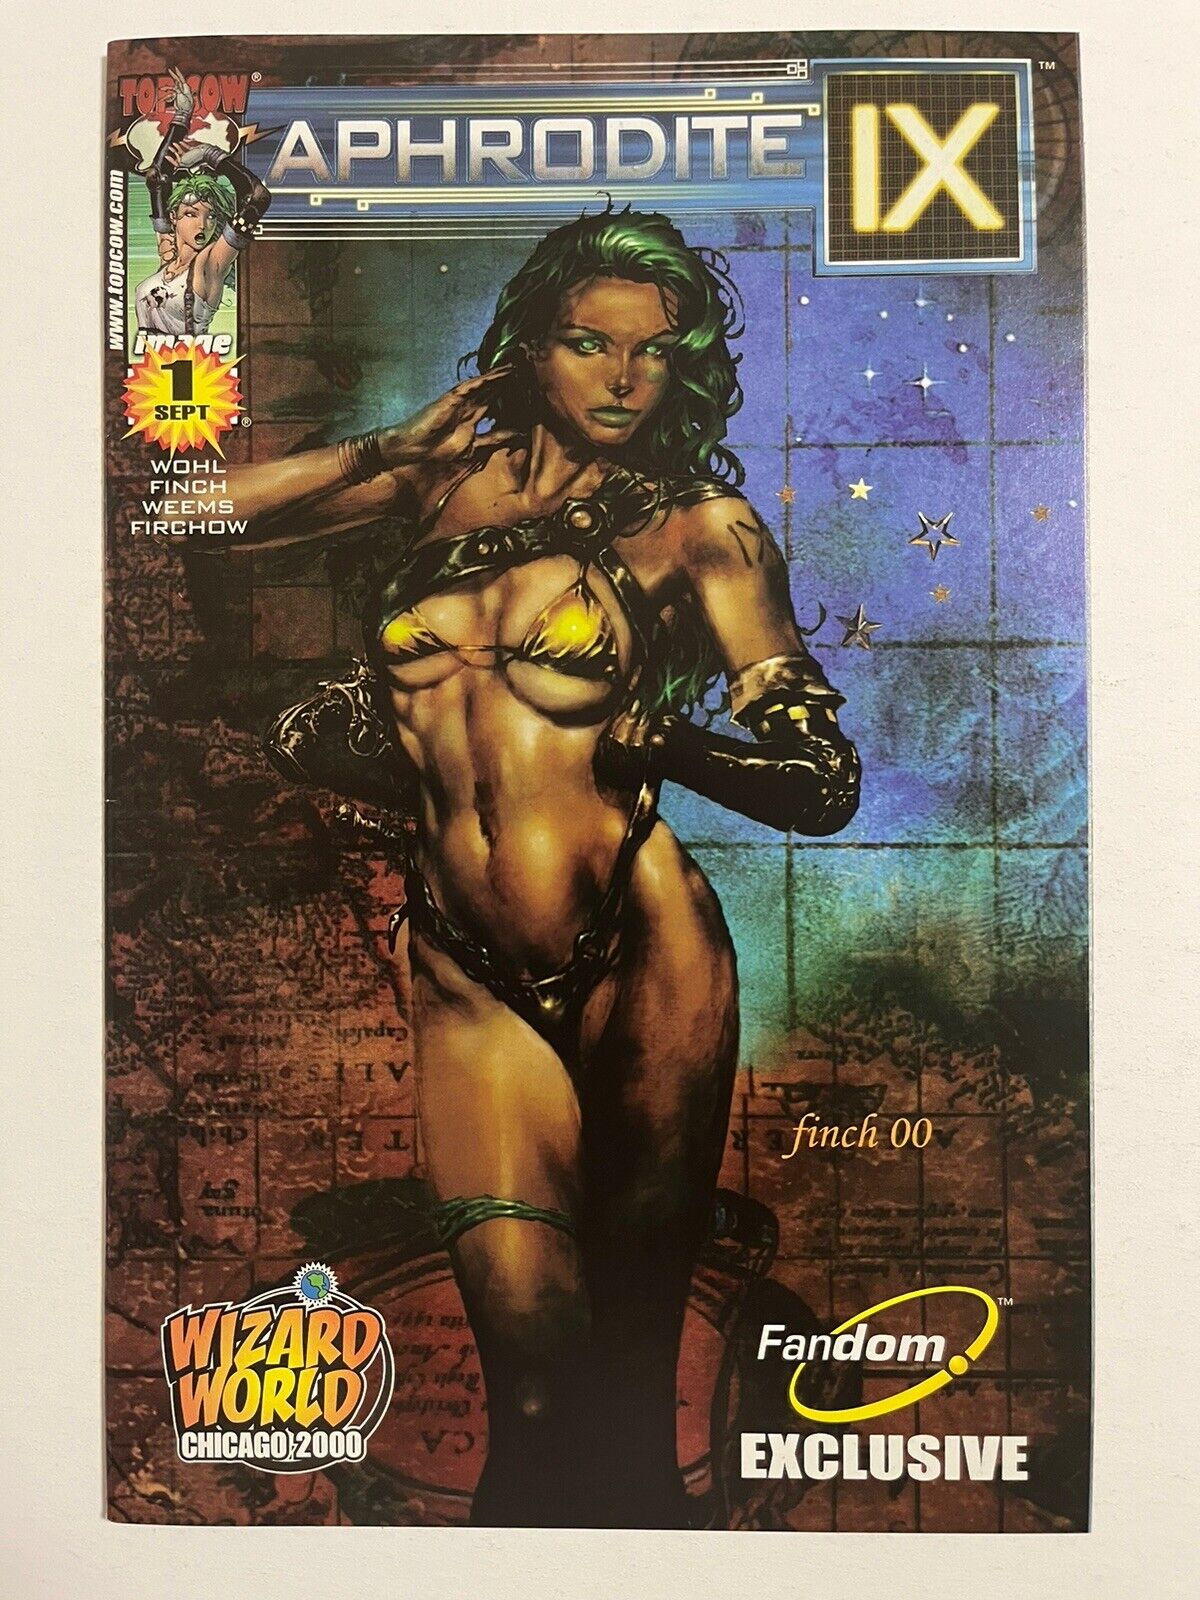 Aphrodite IX # 1 - Wizard World Chicago 2000 Fandom Variant - Higher Grade VF